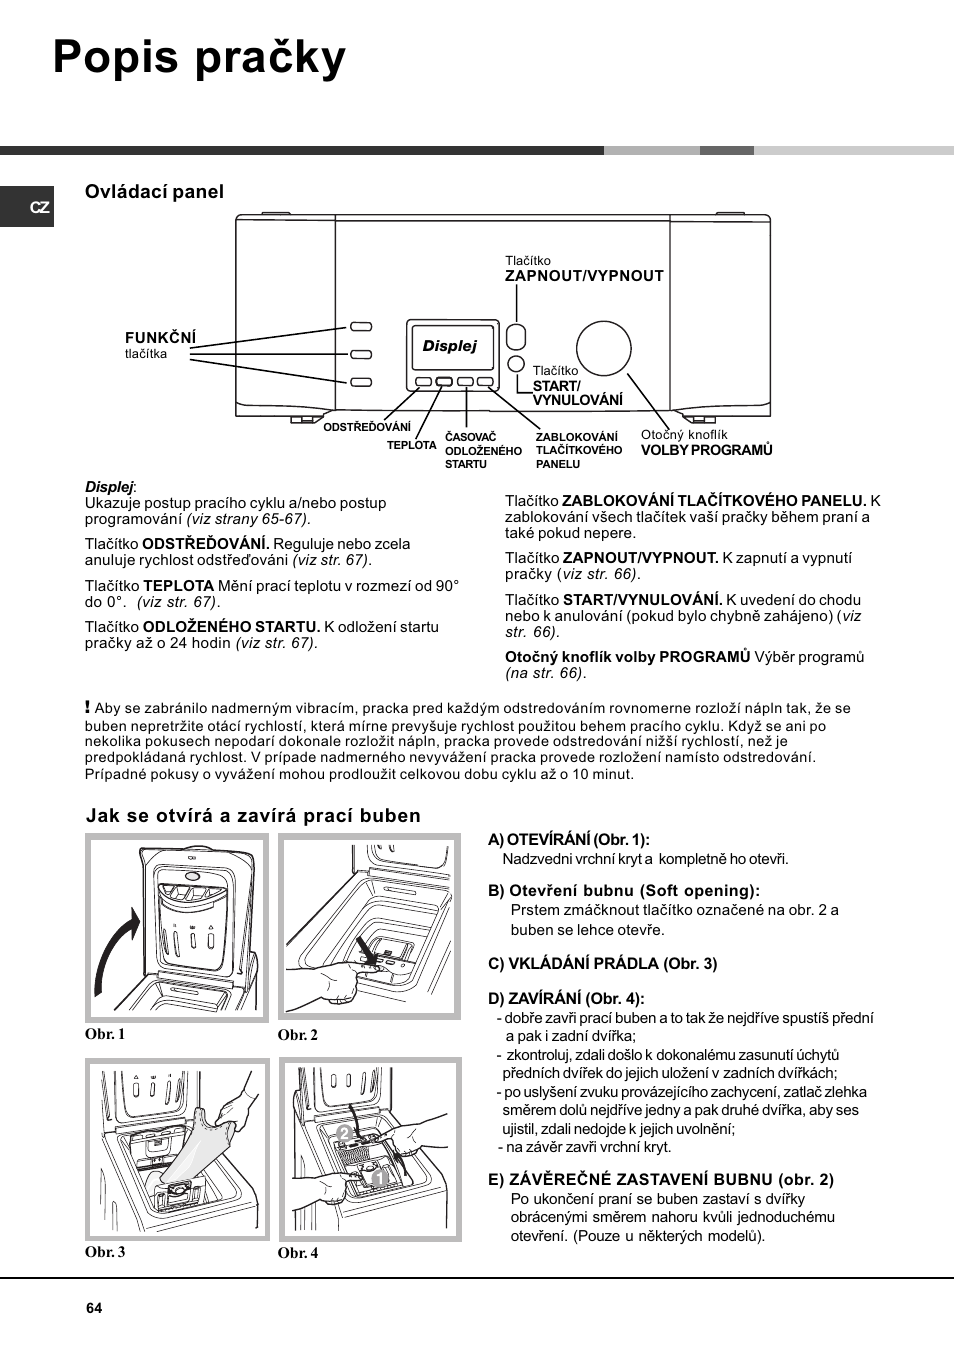 Popis praèky, Jak se otvírá a zavírá prací buben, Ovládací panel | Hotpoint  Ariston AVTF 109 User Manual | Page 64 / 72 | Original mode